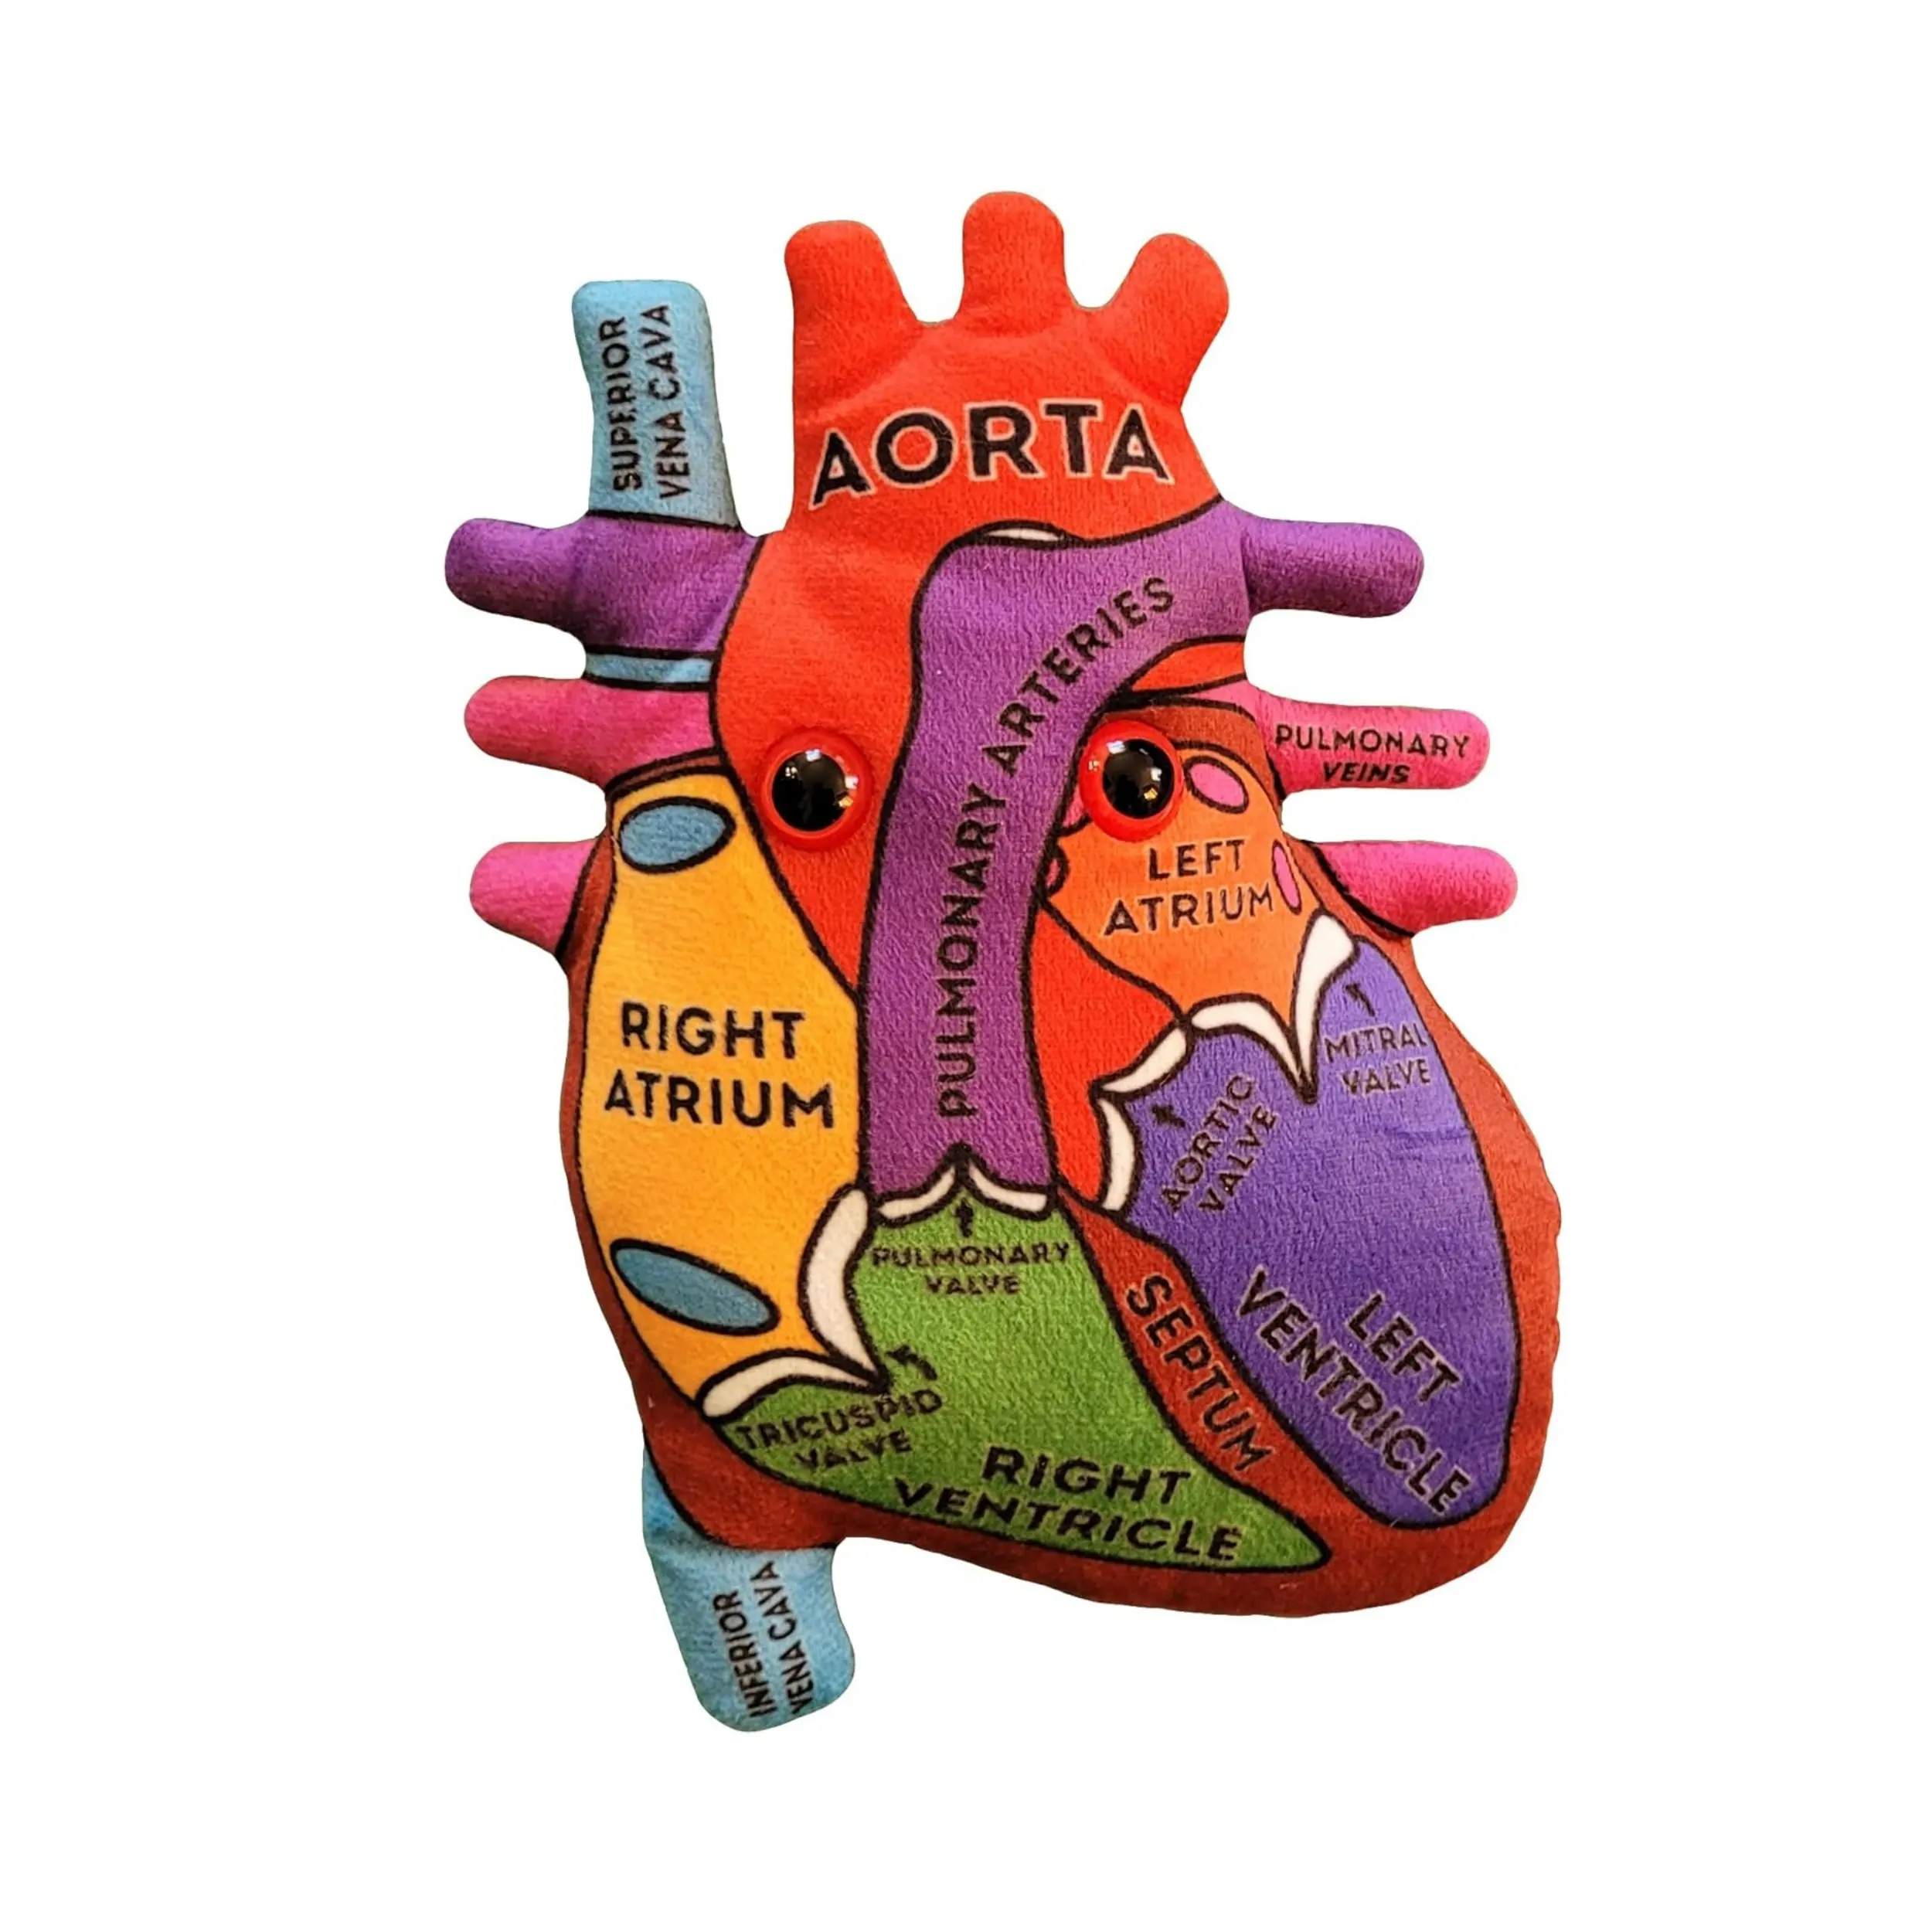 Kalp Organ modeli peluş anatomik kalp Organ modeli ile kalp hakkında bilgi edinin öğrenciler için eğitim biyoloji hediye hastaları